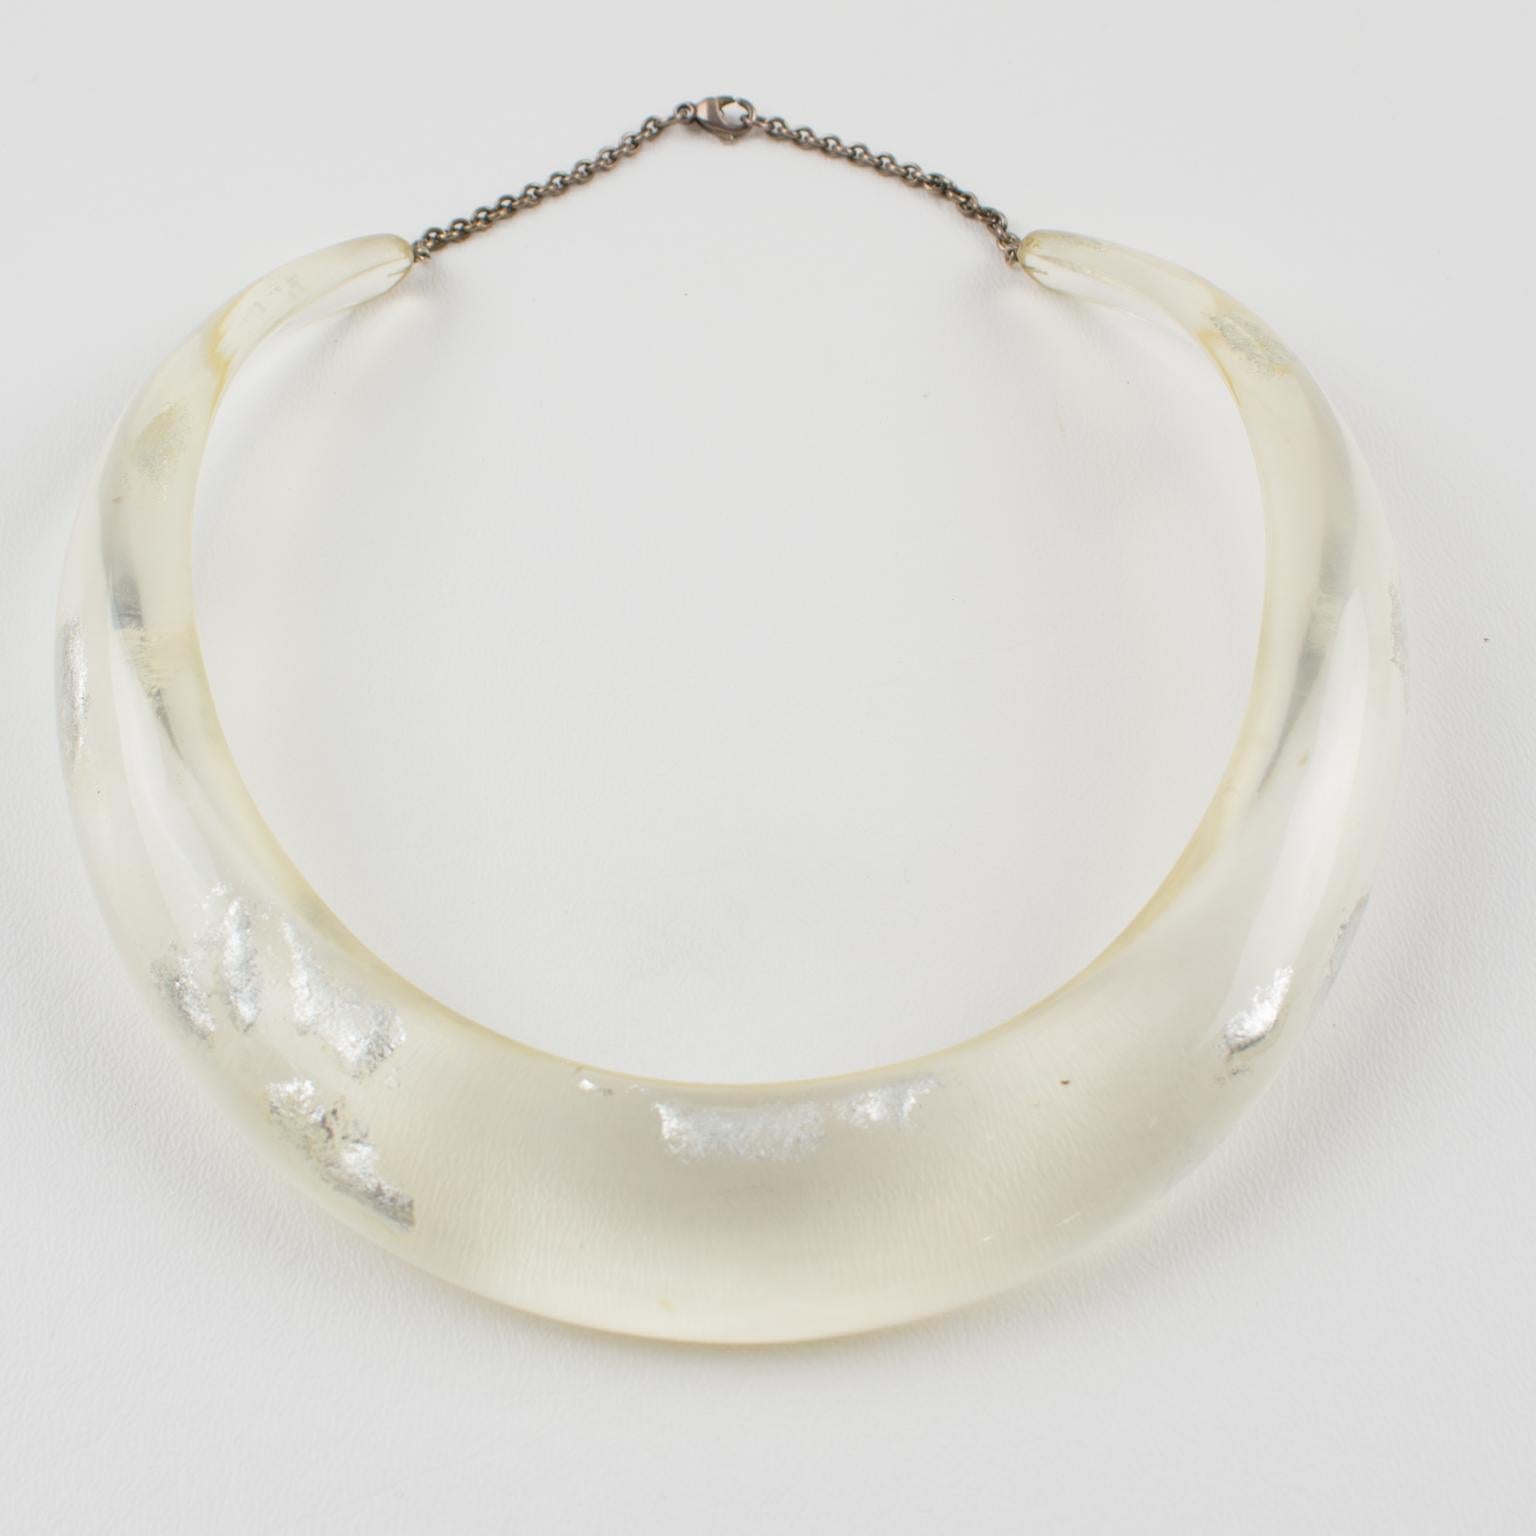 Diese elegante Halskette mit Halsband aus einem italienischen Studio für Kunsthandwerker und Designer besteht aus einer starren Latzform aus Lucite oder Harz in durchscheinender, klarer Farbe, die mit Silberflockeneinschlüssen in einem organischen,